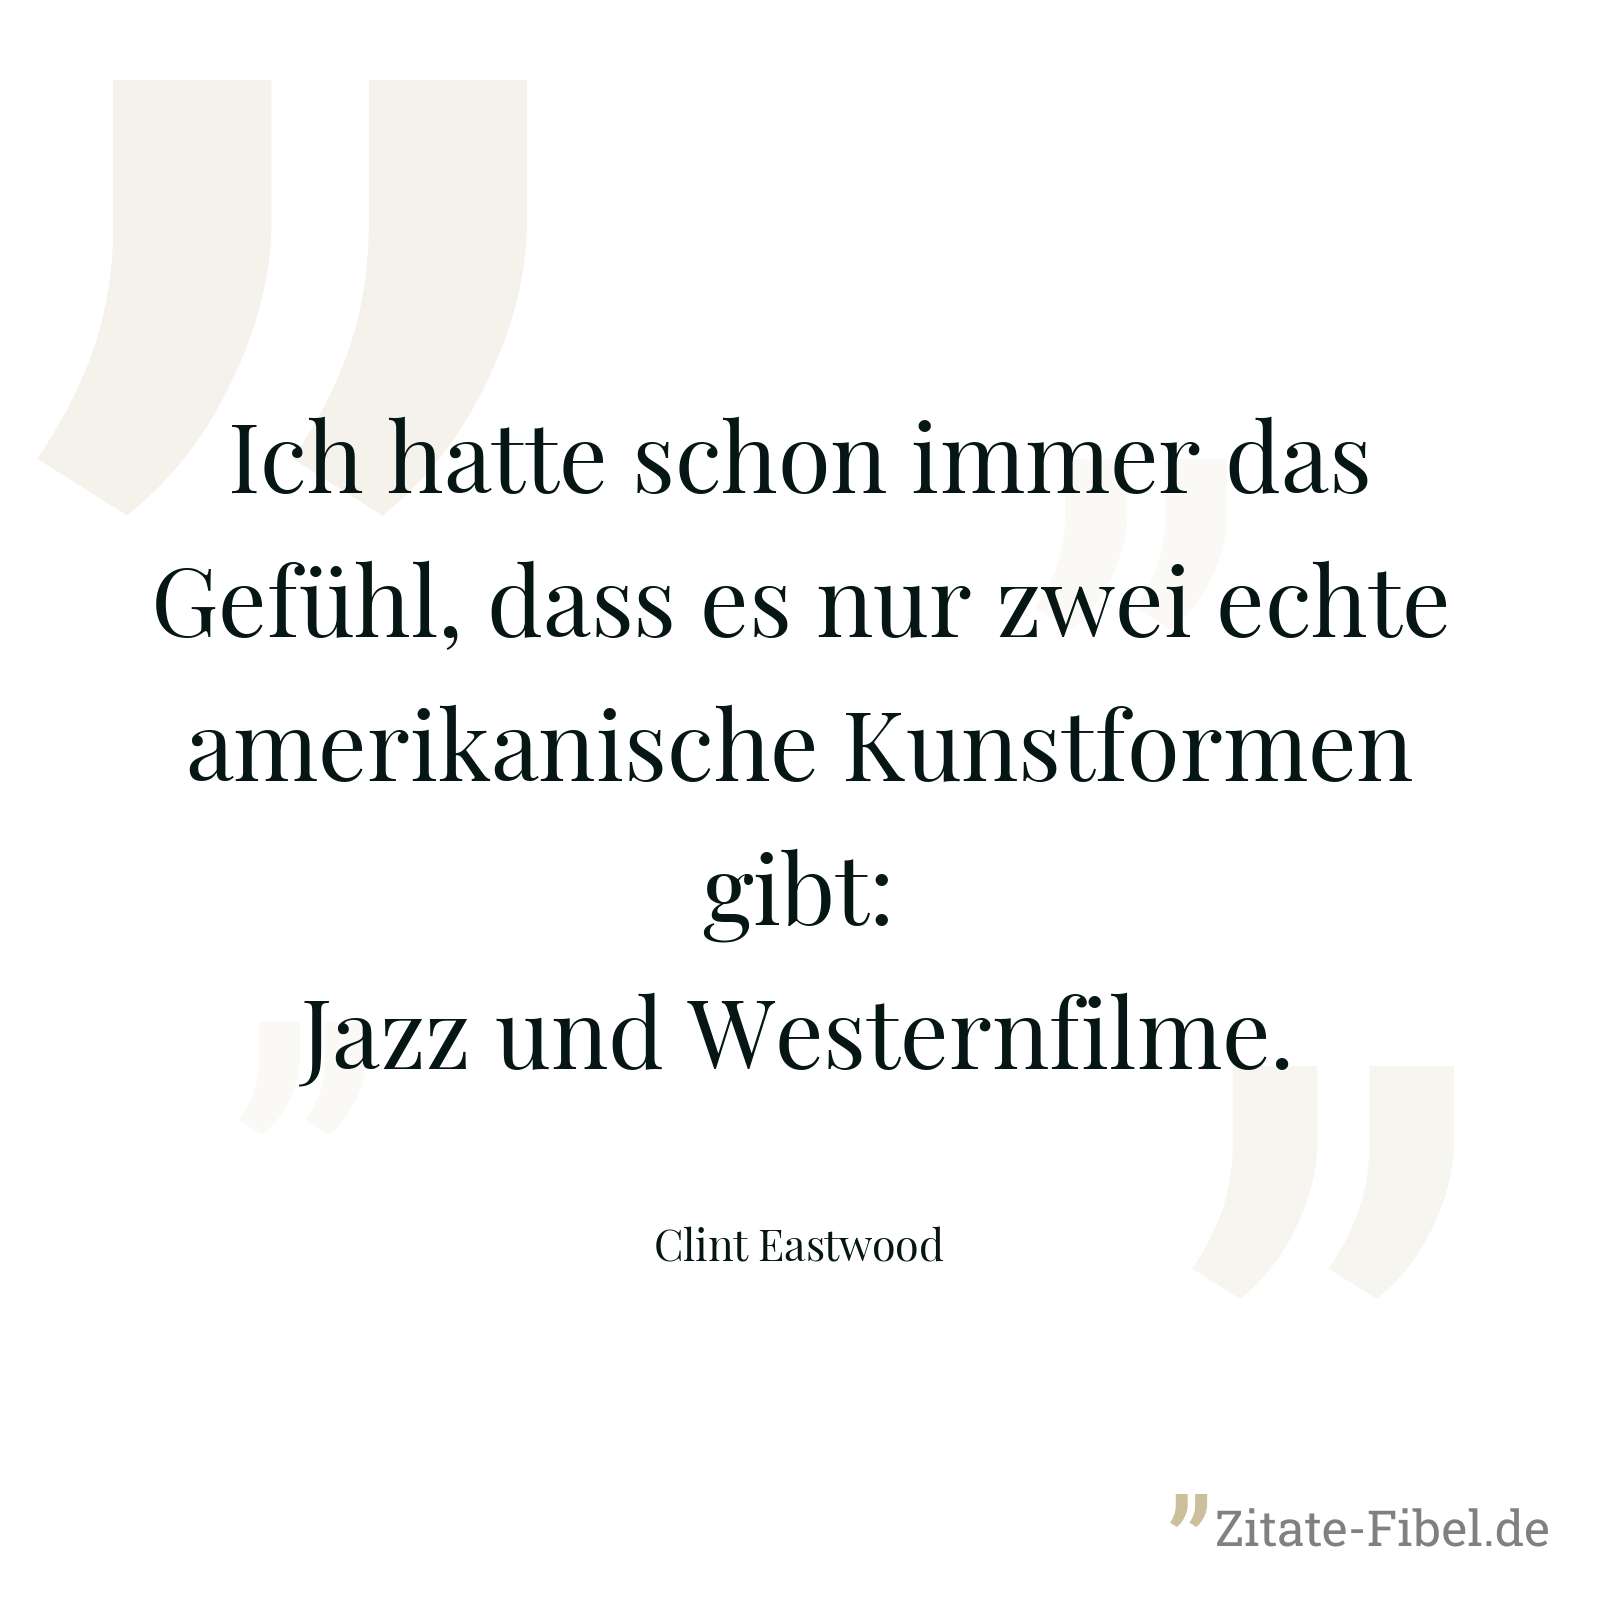 Ich hatte schon immer das Gefühl, dass es nur zwei echte amerikanische Kunstformen gibt: Jazz und Westernfilme. - Clint Eastwood